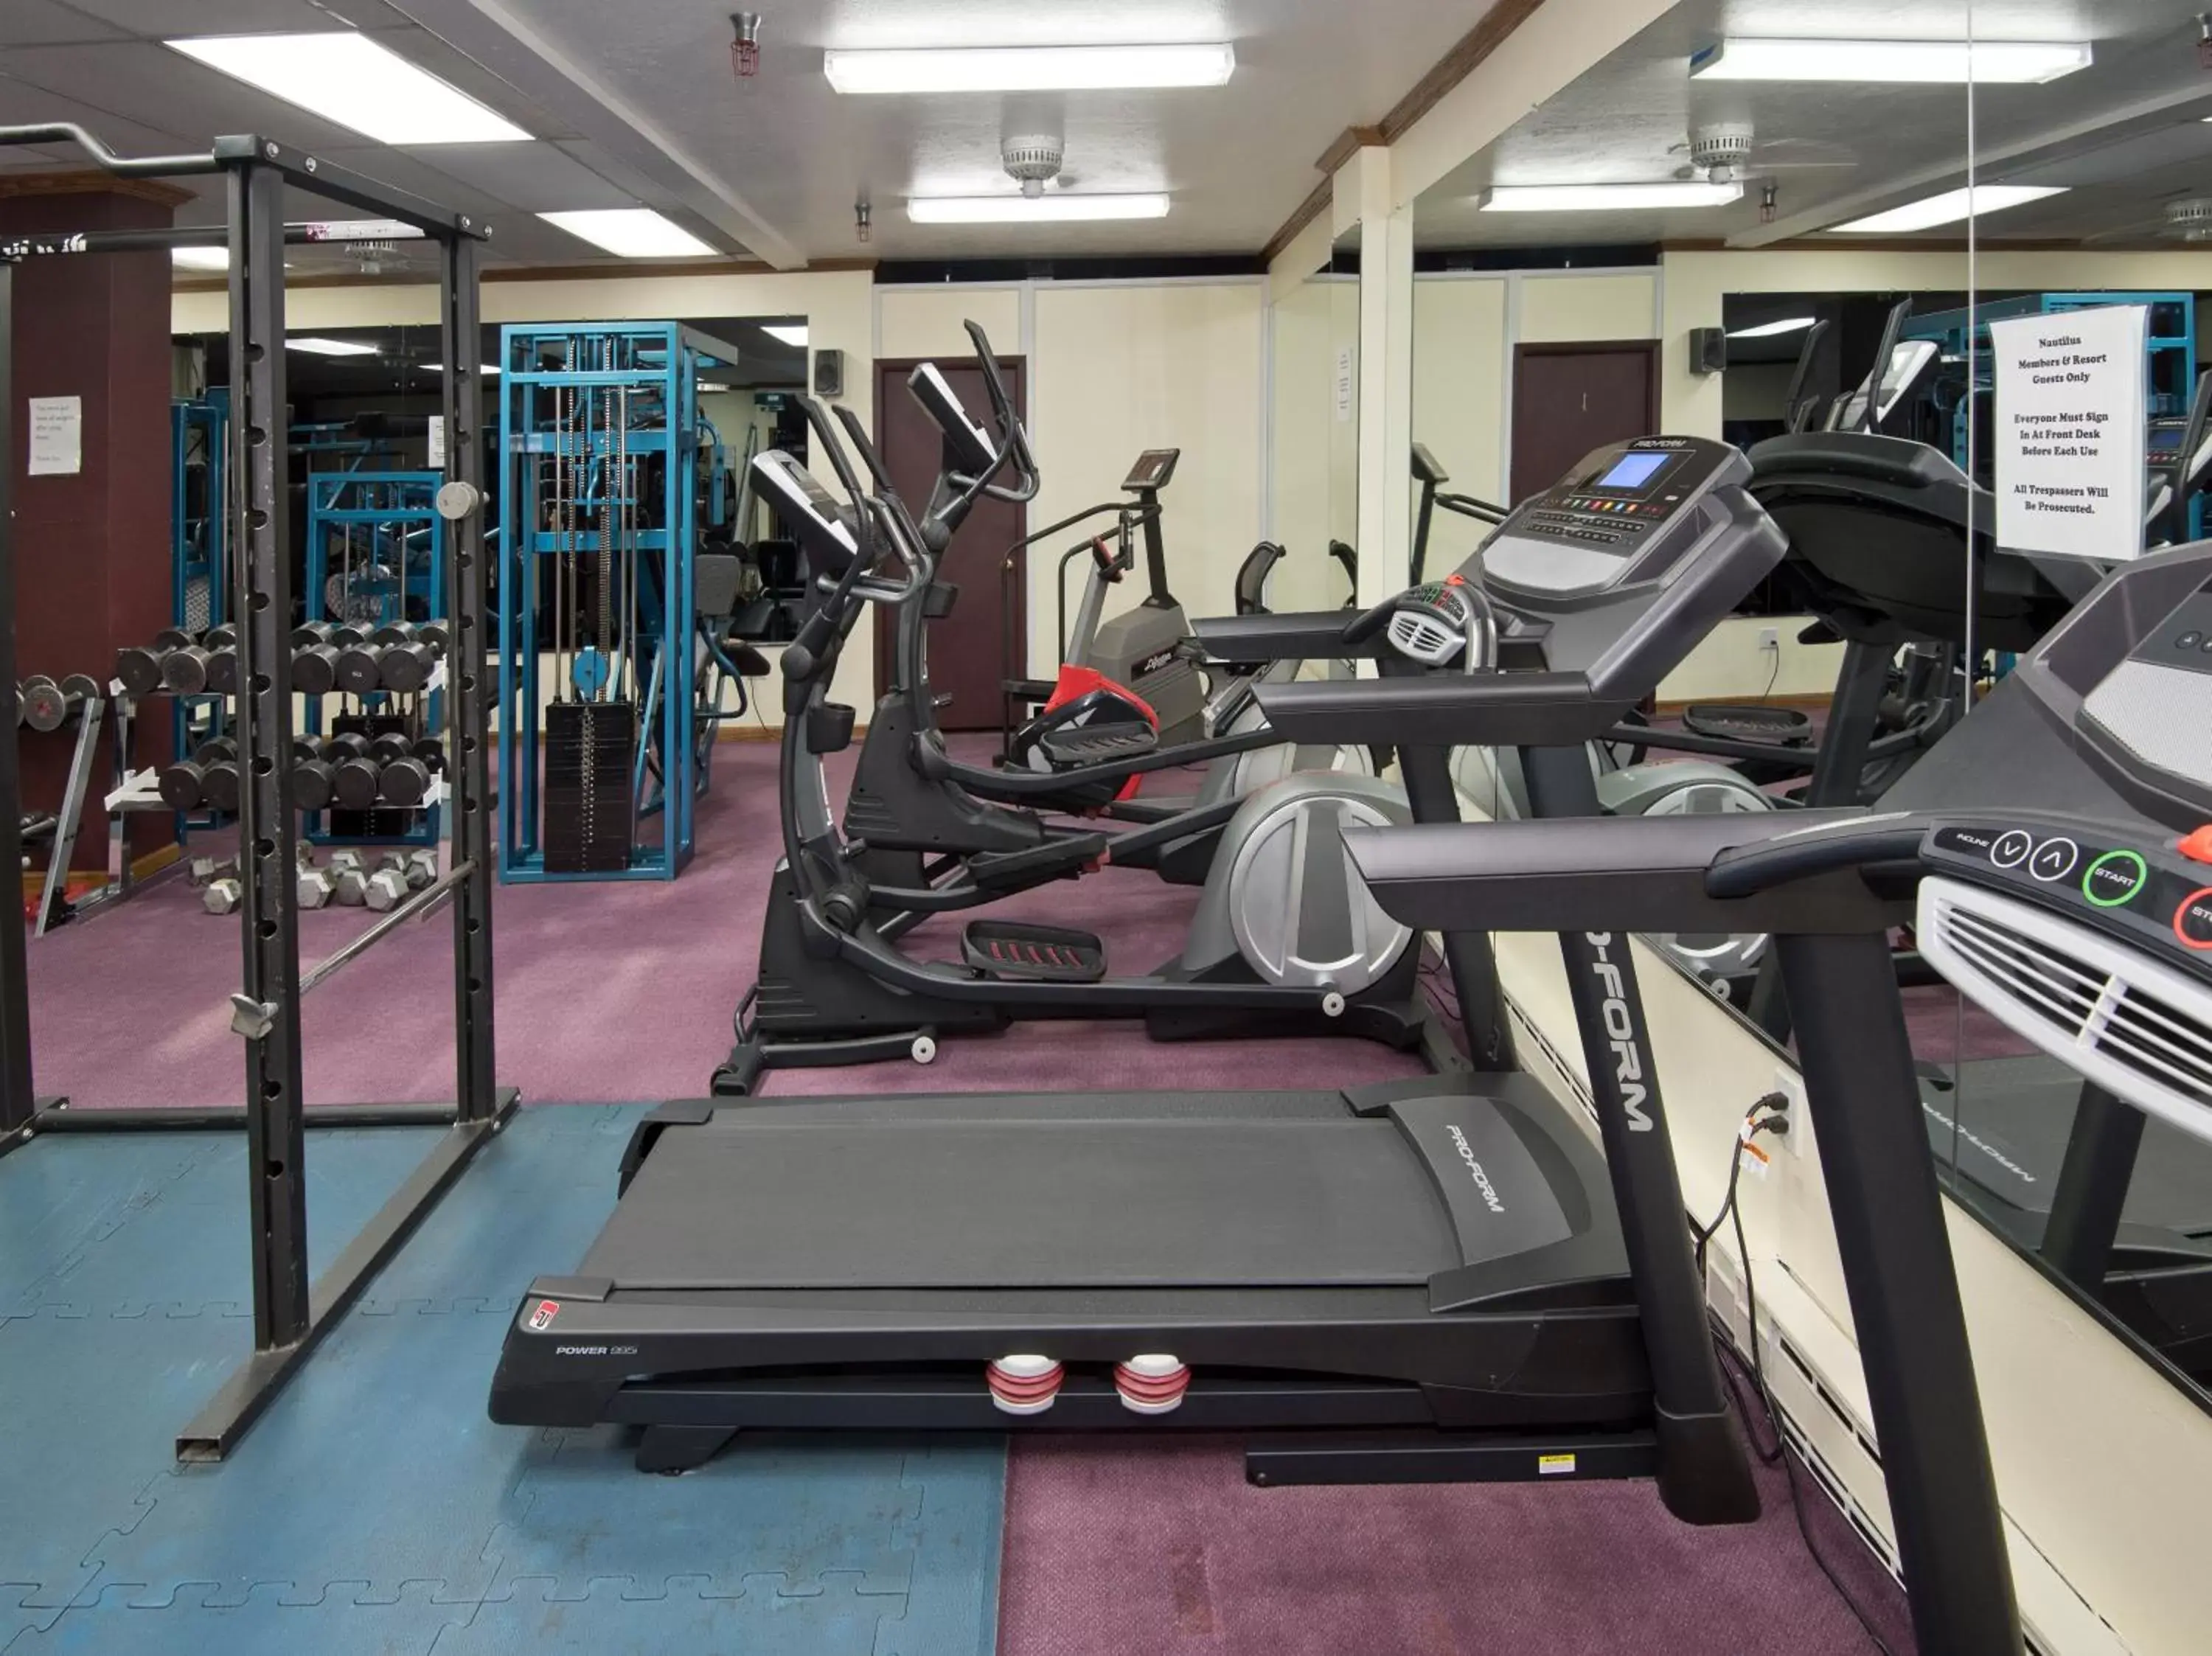 Fitness centre/facilities, Fitness Center/Facilities in Vail Run Resort